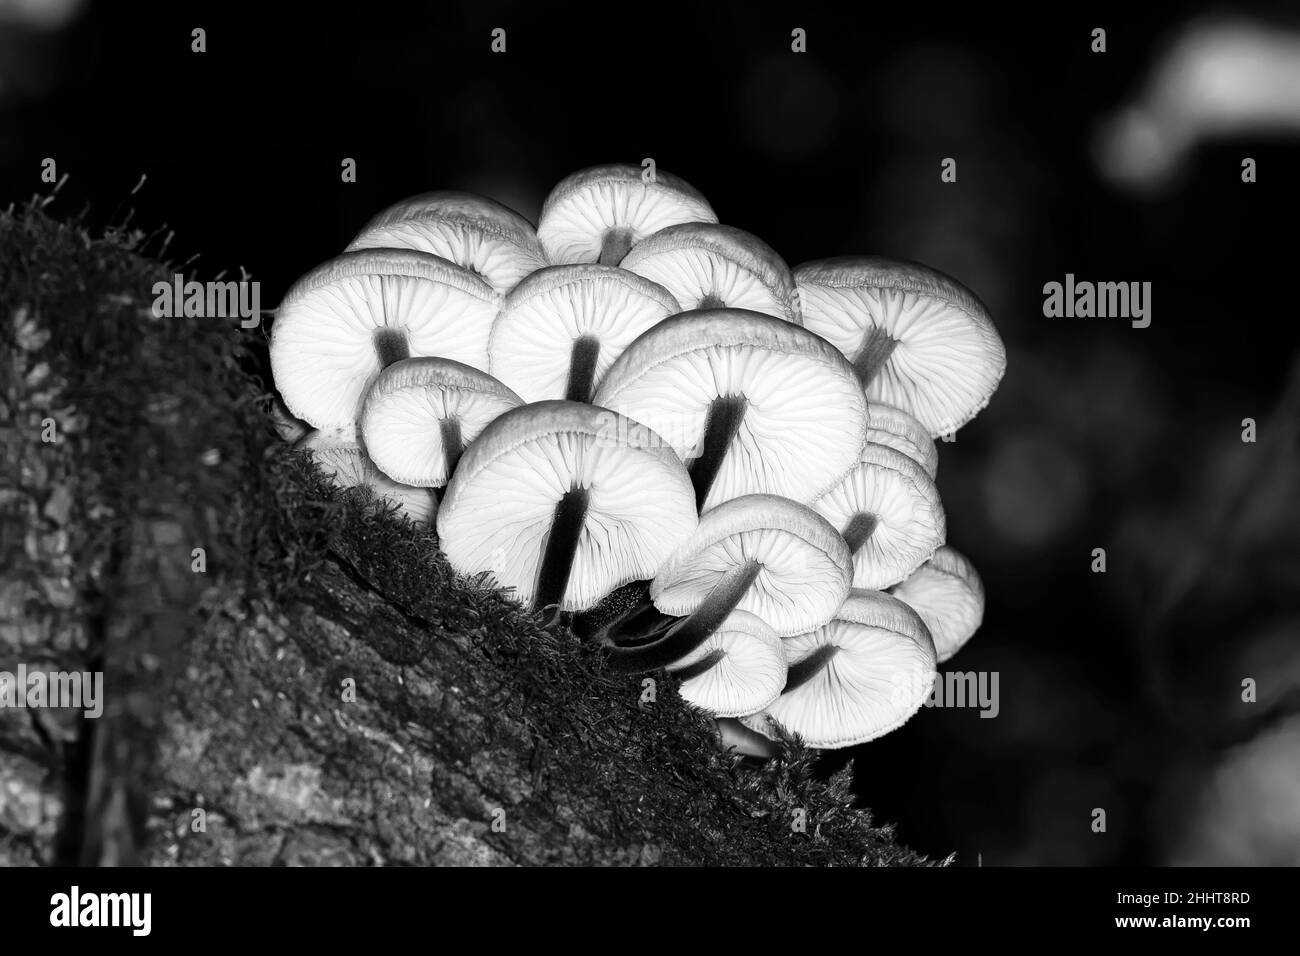 Armillaria mellea oder Honigpilz wächst auf einem Baumstamm im Wald unter Moos, Bodenansicht, Makro Stockfoto